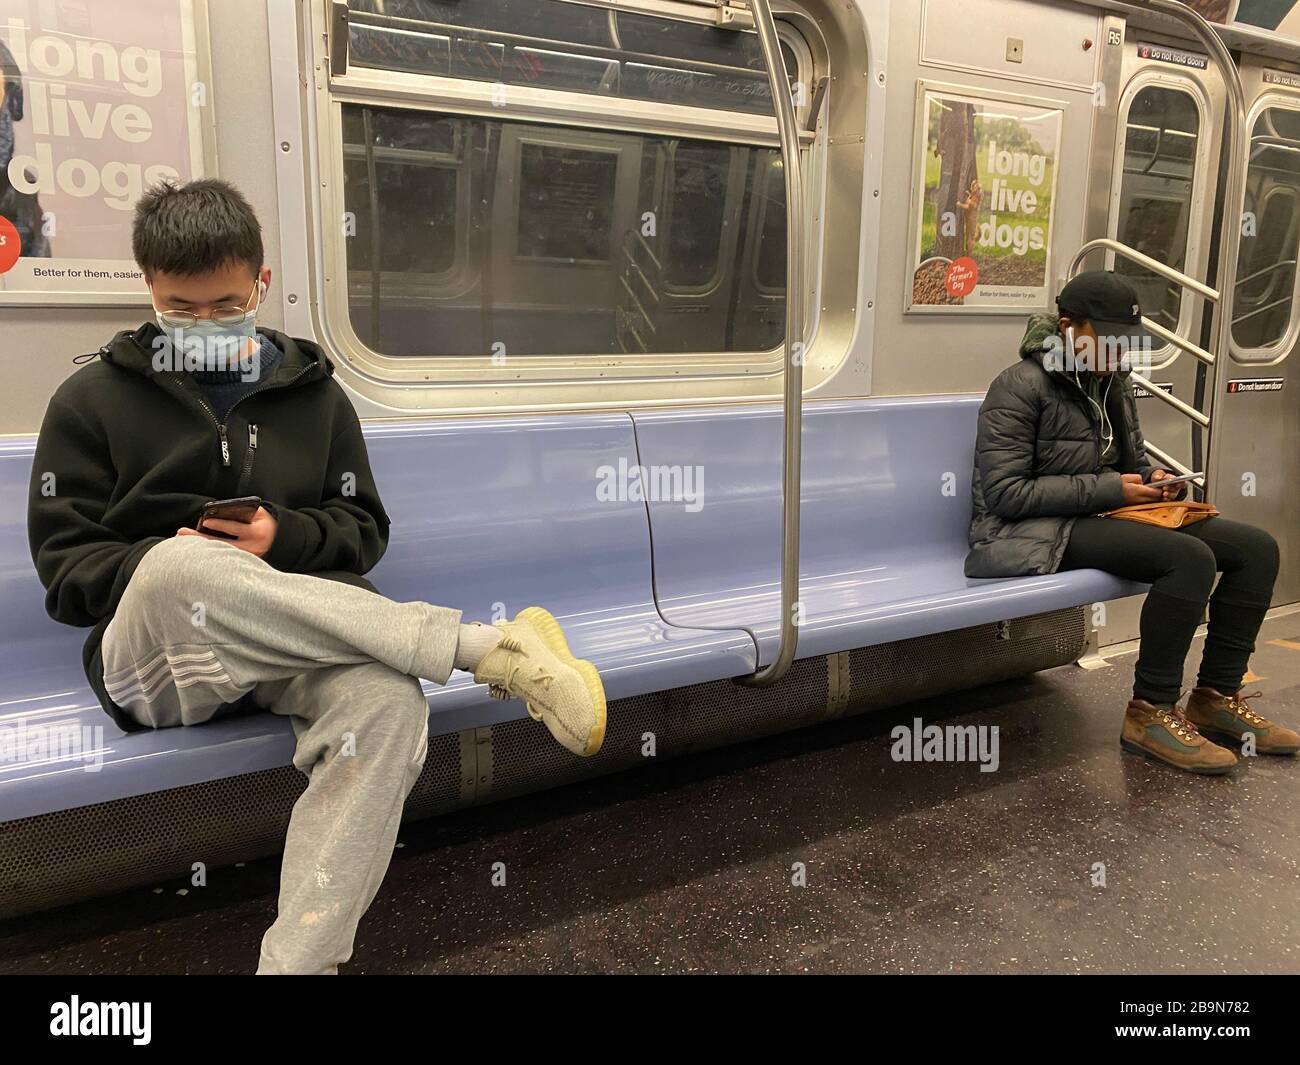 Da New York City offiziell gesperrt wird, ist es nicht schwer, soziale Distanzierung auf U-Bahnen zu üben, da relativ wenige Menschen die Züge fahren. Fahrer sind hauptsächlich wichtige Arbeiter. Brooklyn, NY Stockfoto